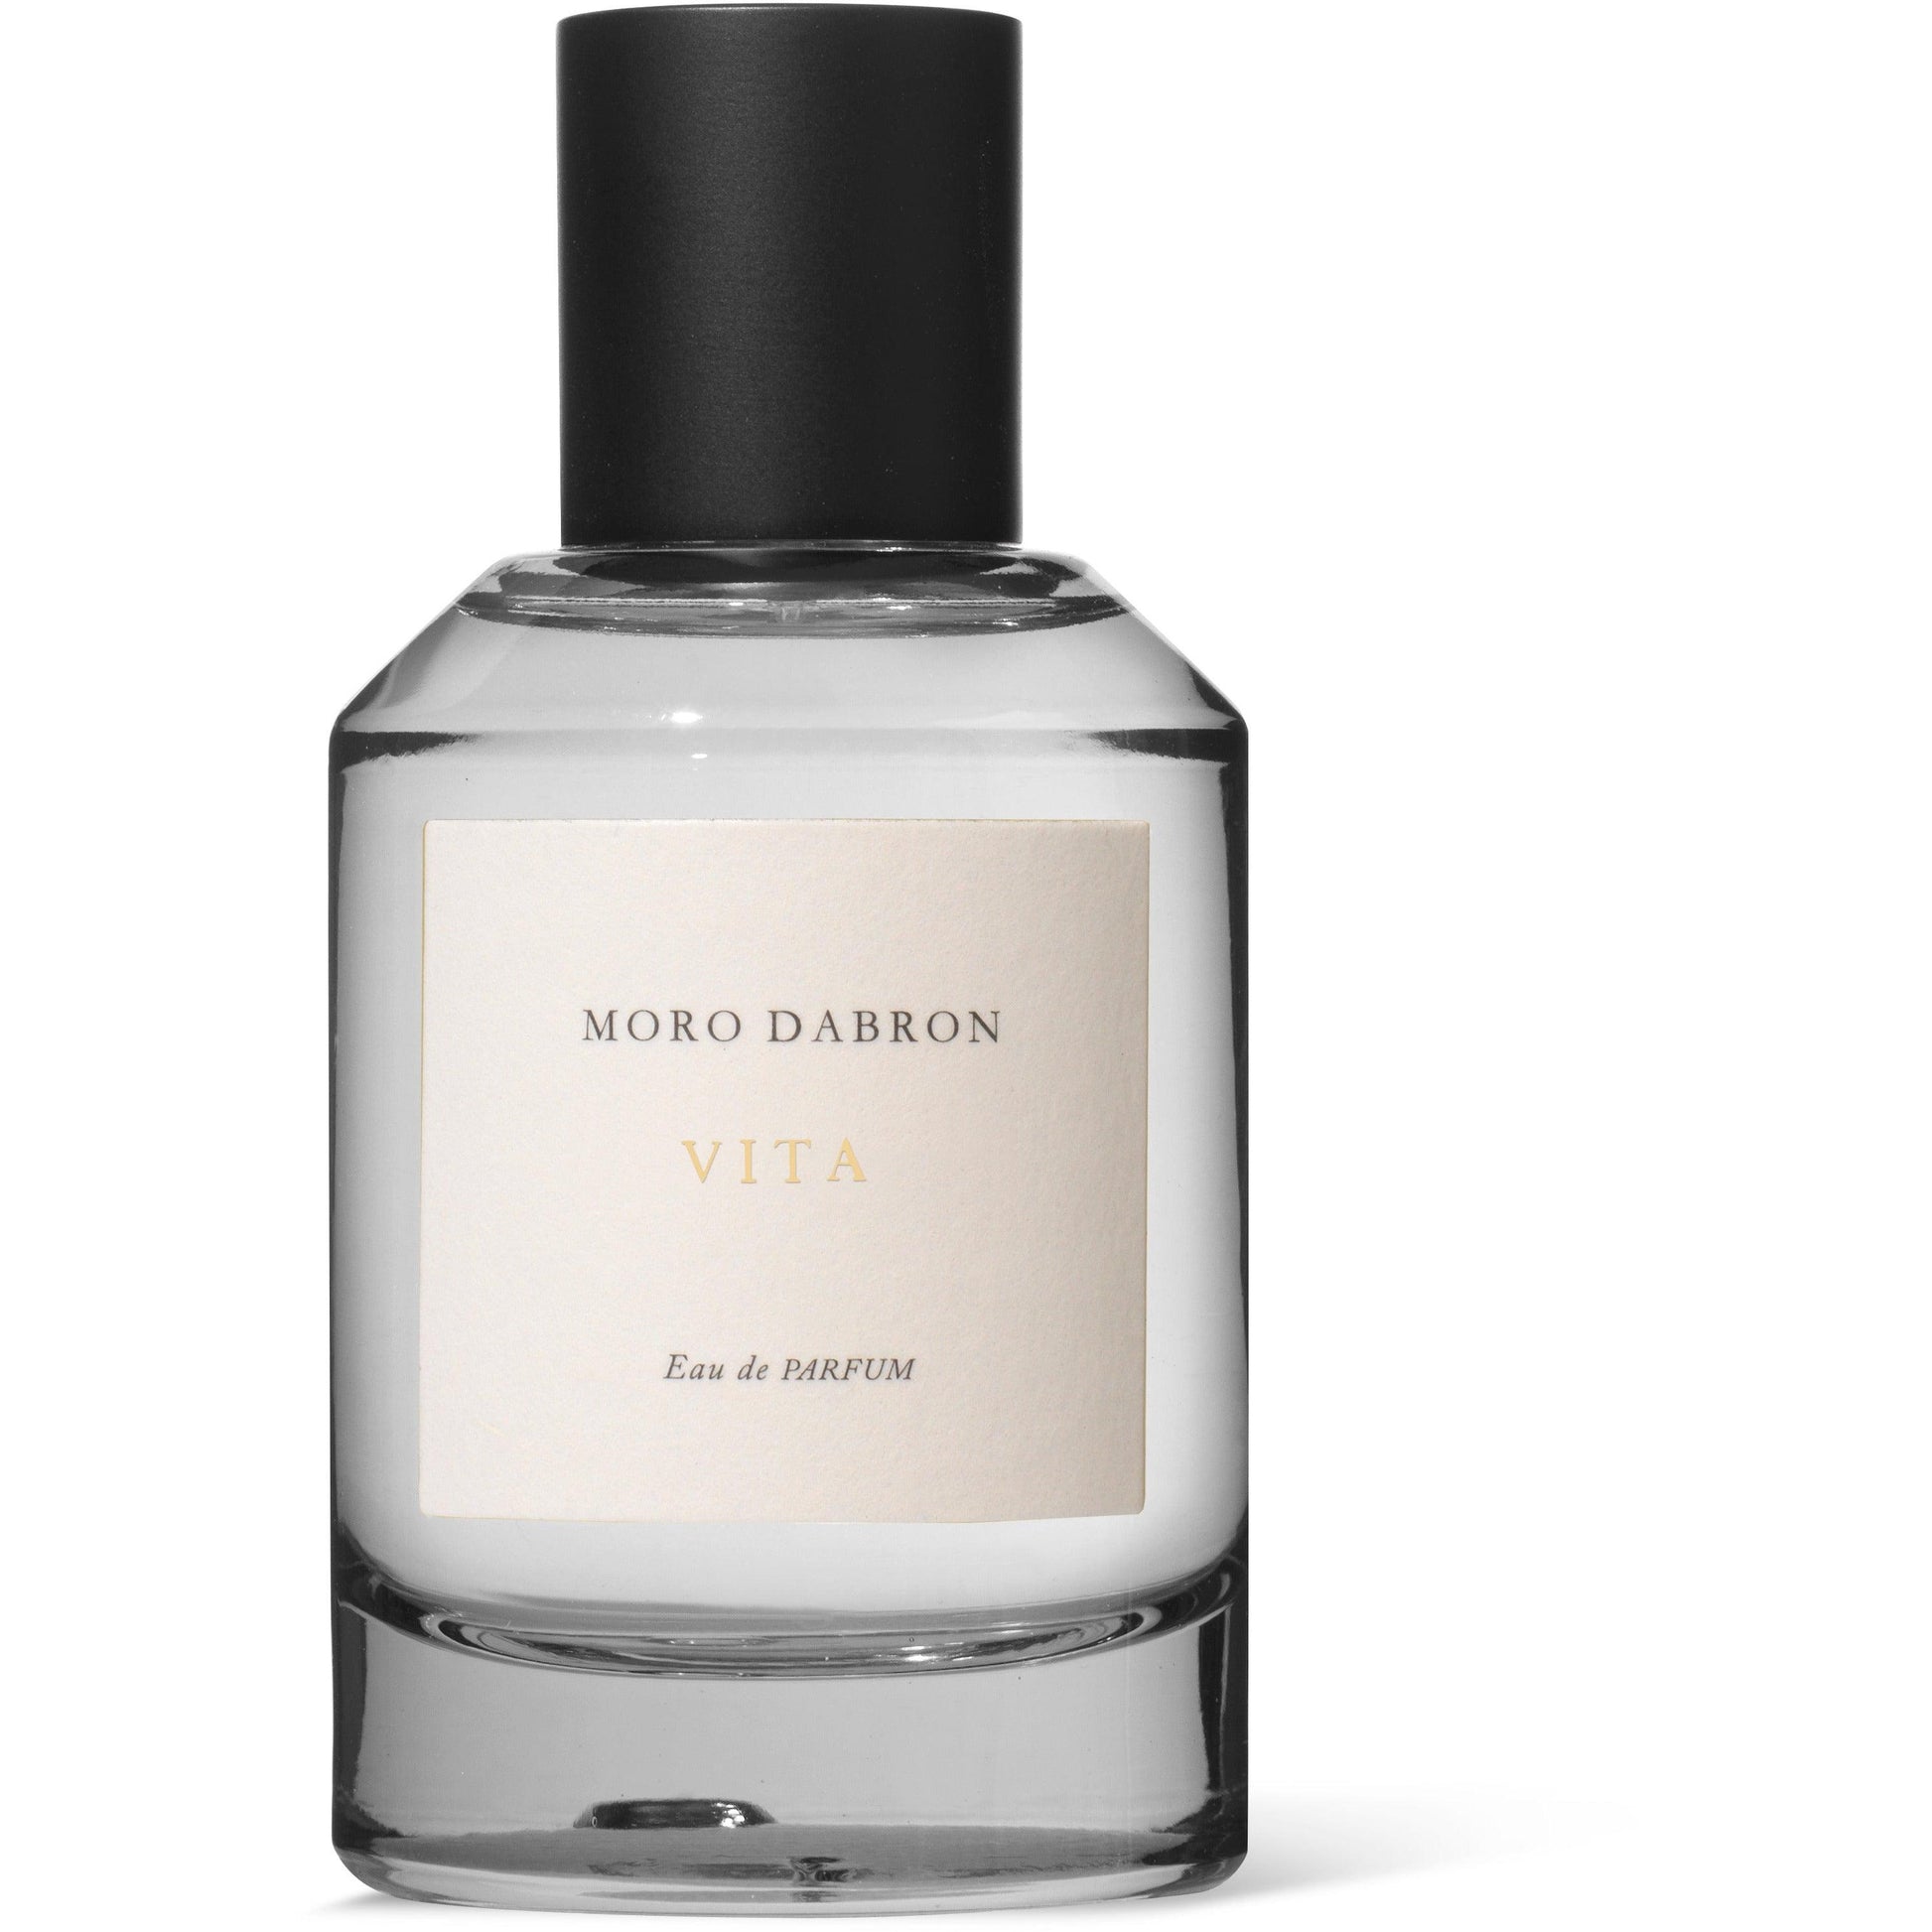 Vita Eau de Parfum - Bilden Home & Hardware Market